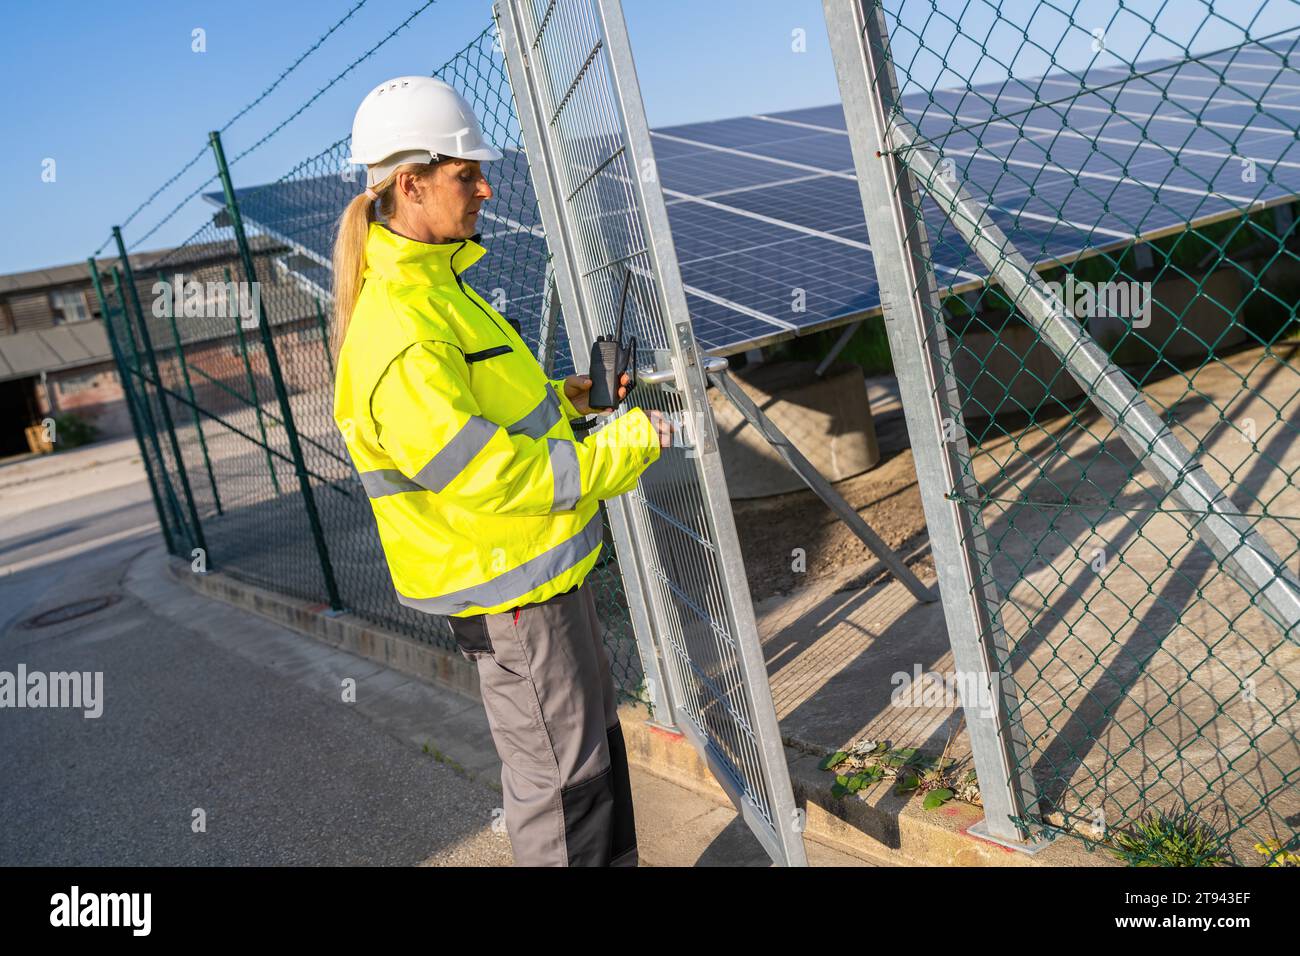 Tecnico in giacca ad alta visibilità su un cancello con walkie-talkie presso l'impianto solare. Immagine del concetto ecologico di energia alternativa. Foto Stock